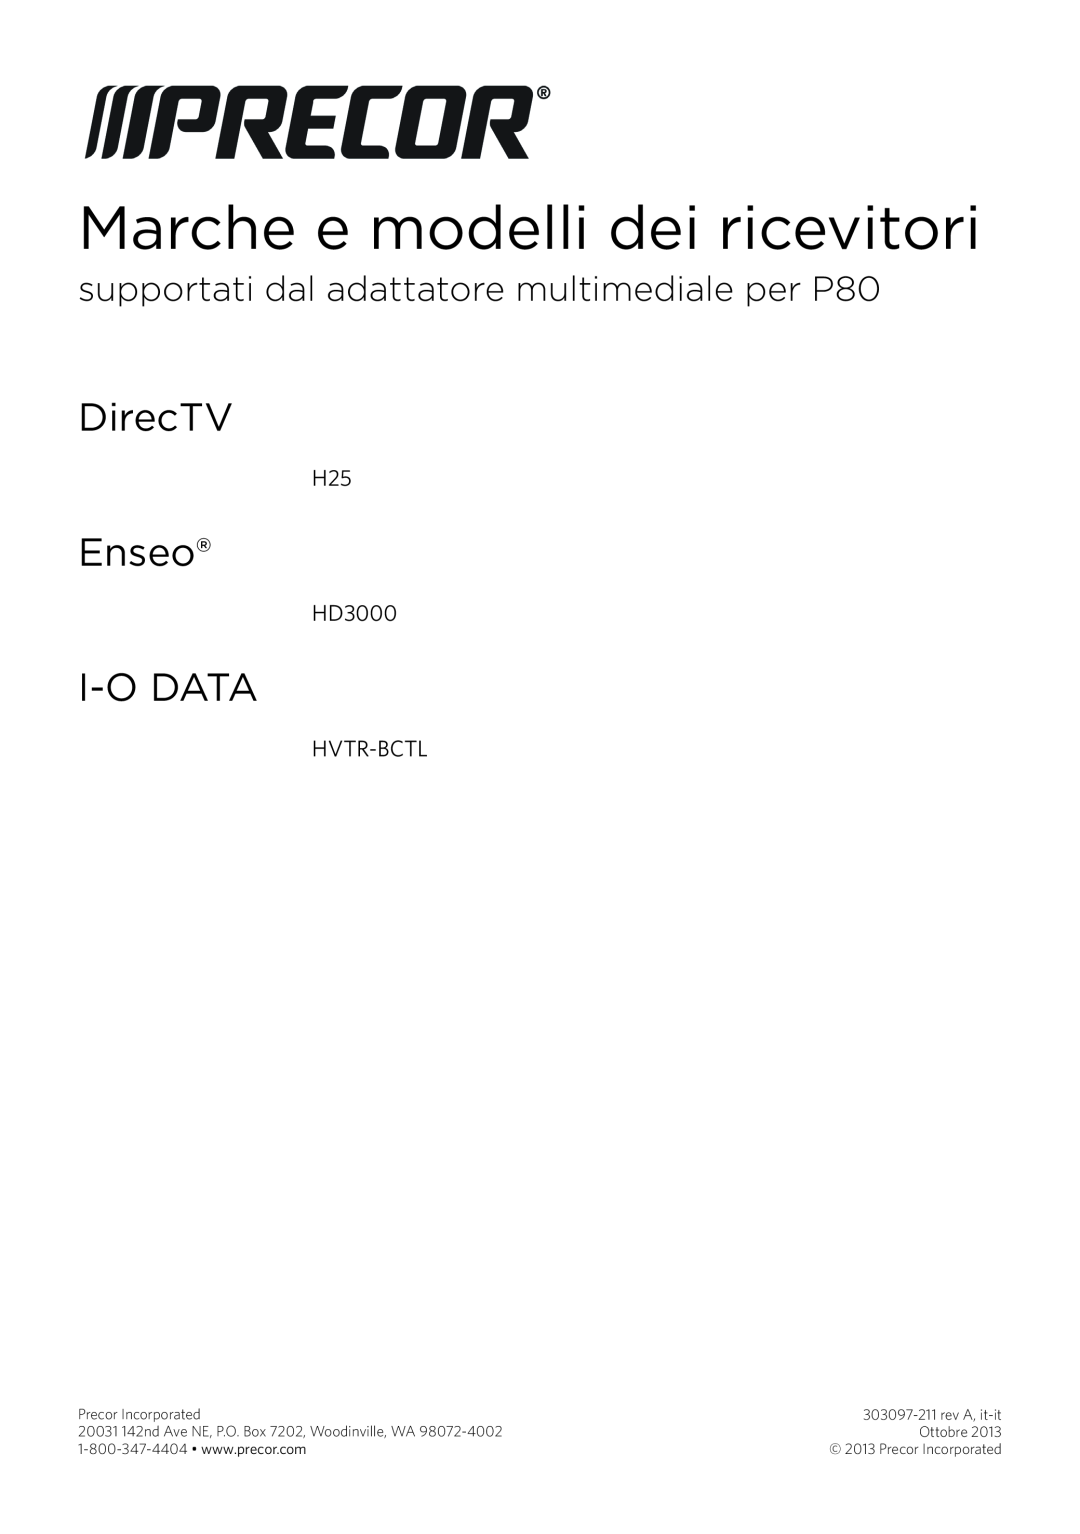 Precor manual supportati dal adattatore multimediale per P80, Marche e modelli dei ricevitori, DirecTV, Enseo, I-Odata 